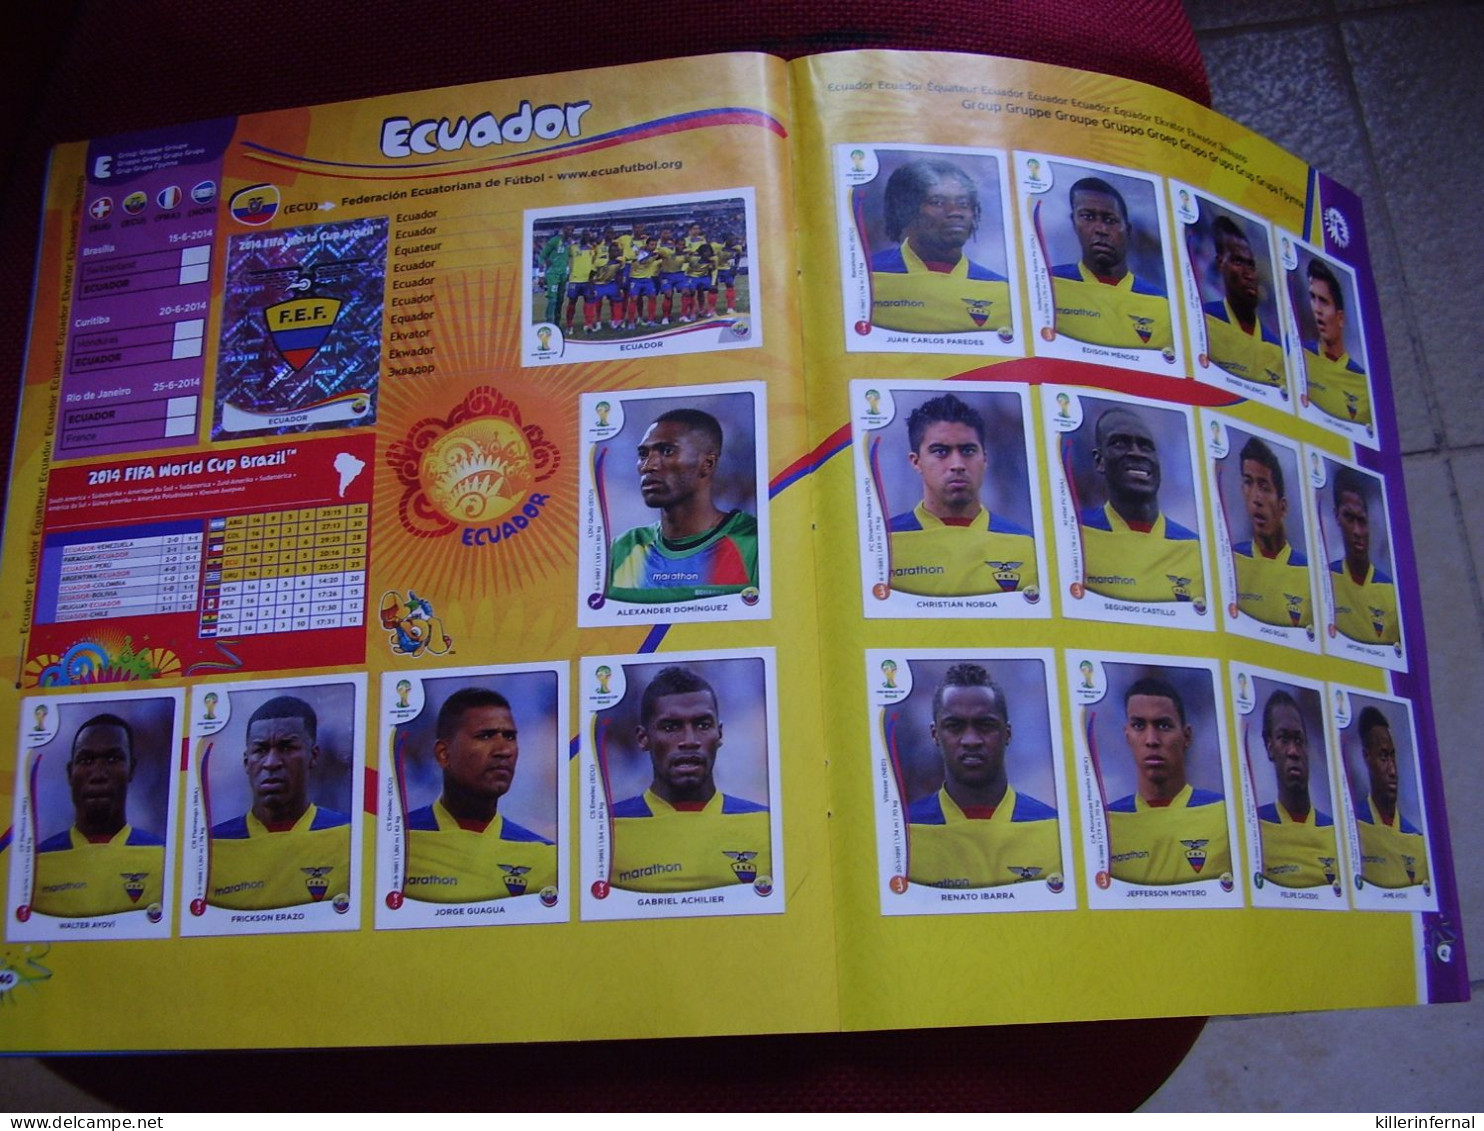 Album Chromos Images Vignettes Stickers Panini Fifa World Cup  ***  Brasil 2014  *** - Album & Cataloghi